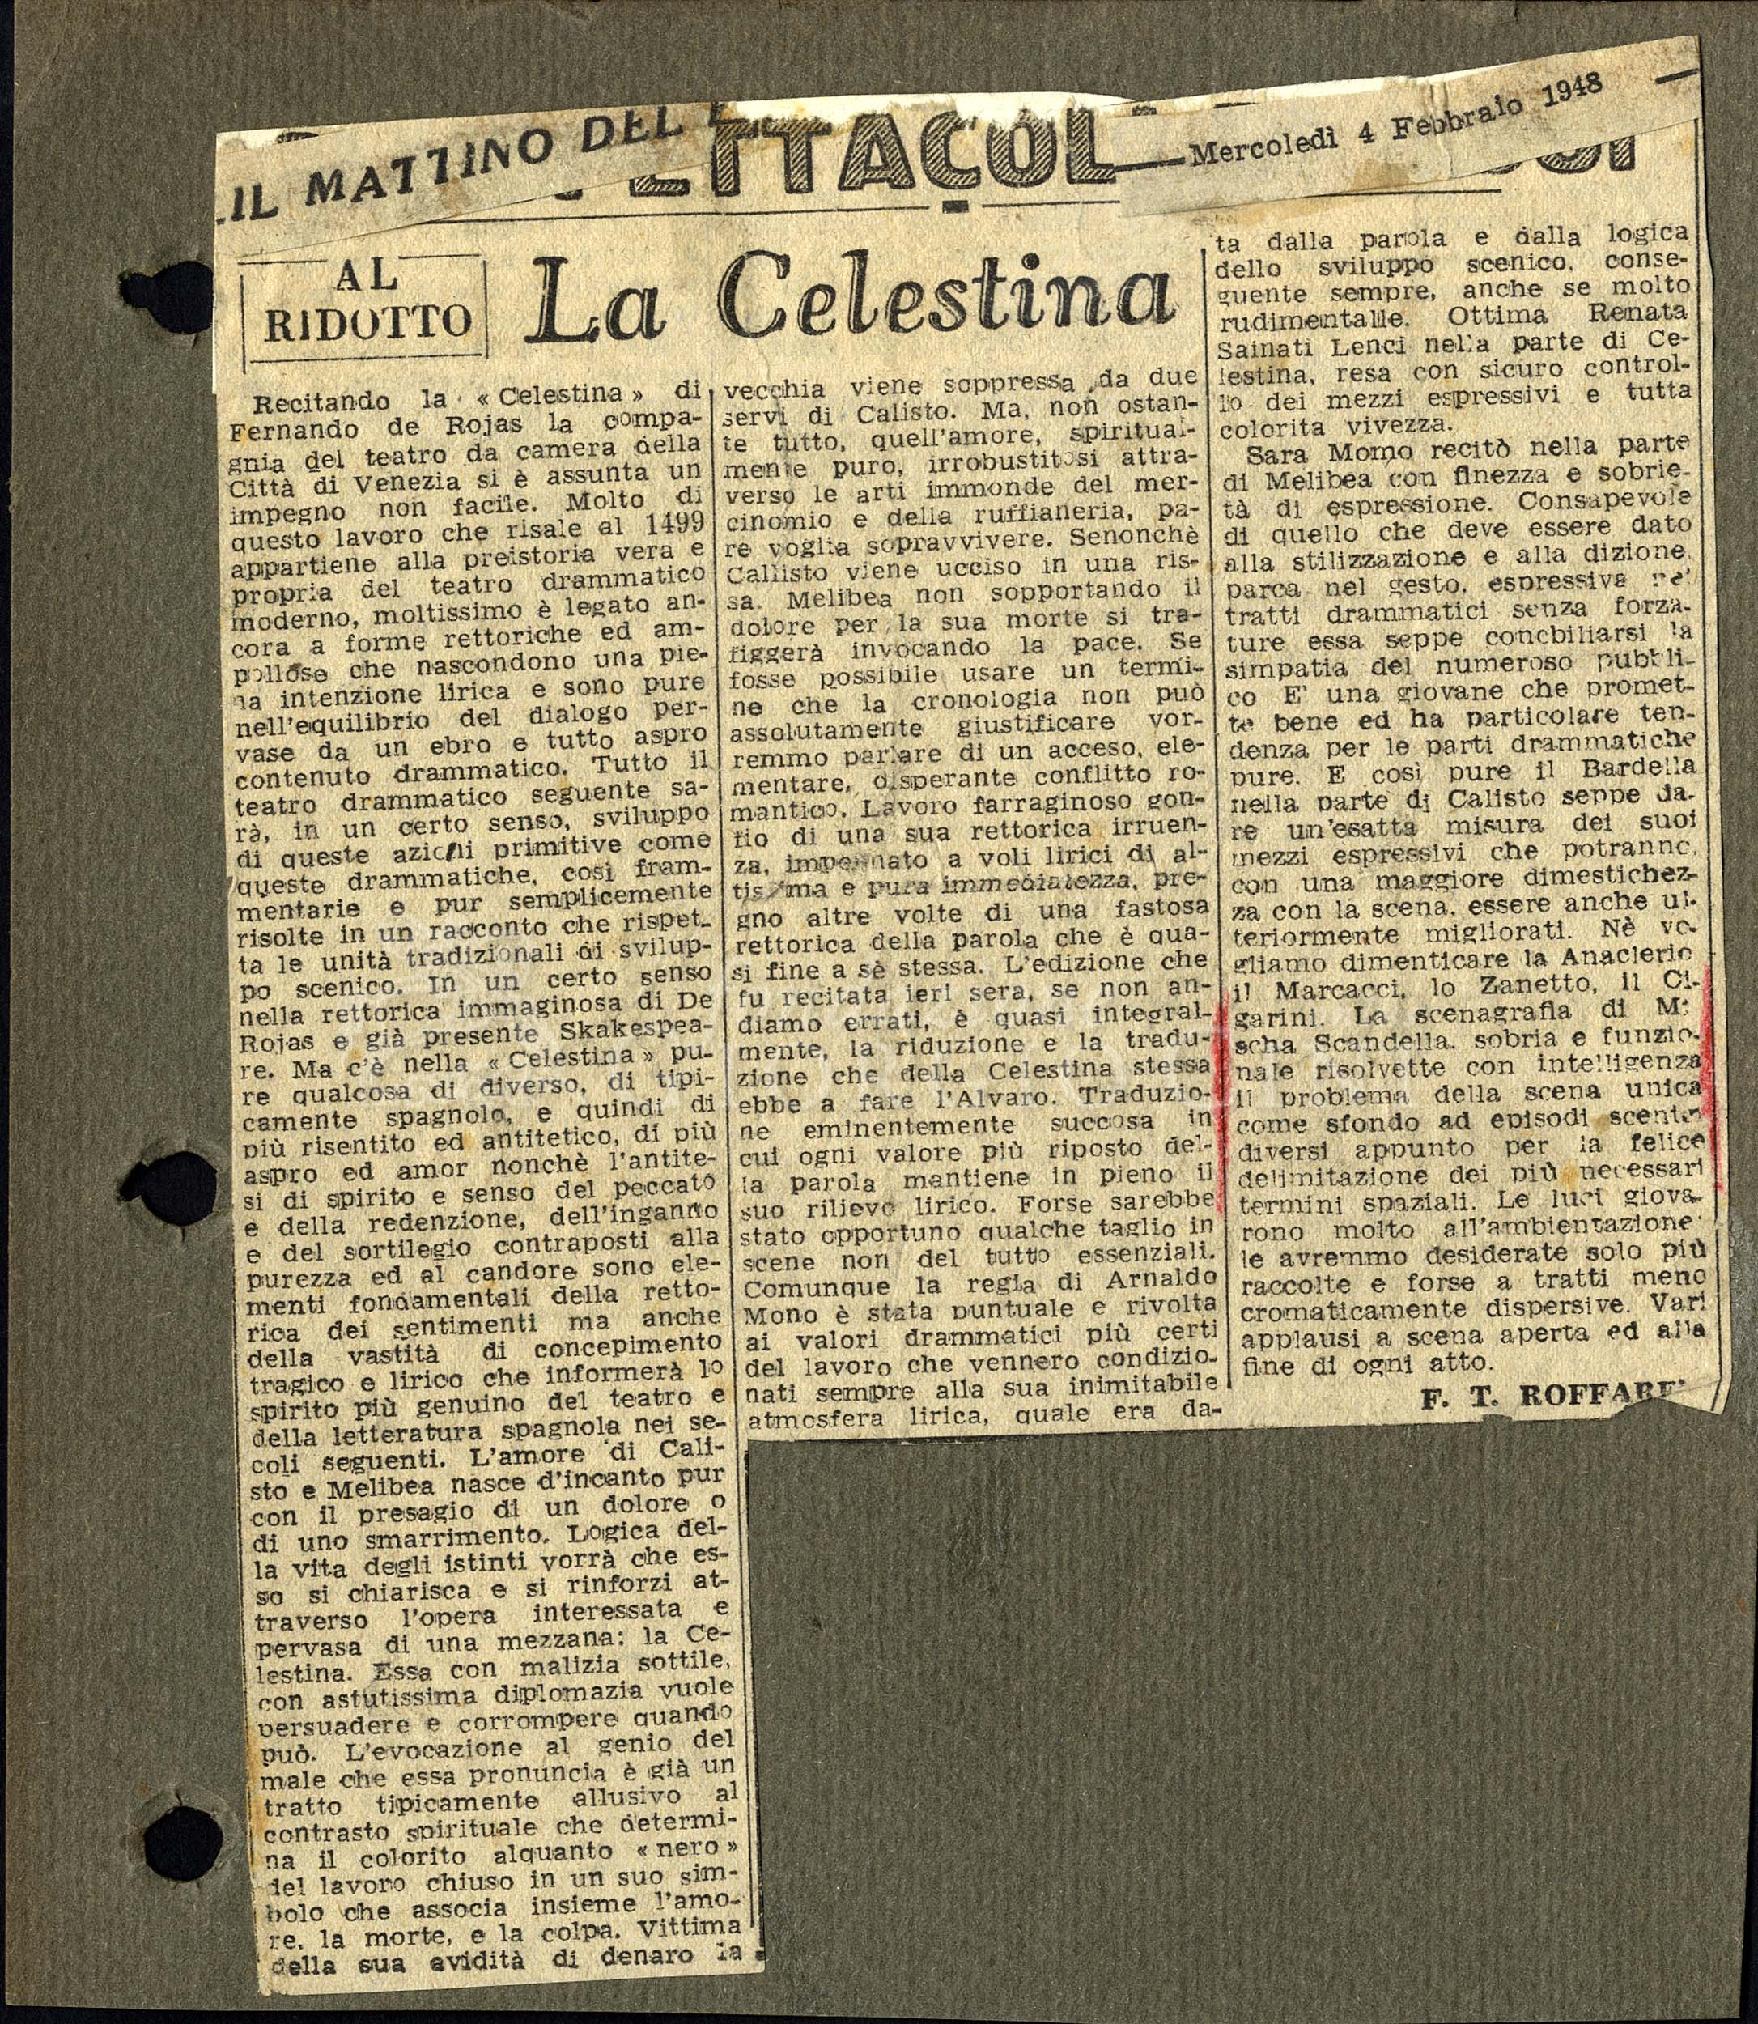 La Celestina
				 : Al Ridotto 04 febbraio 1948